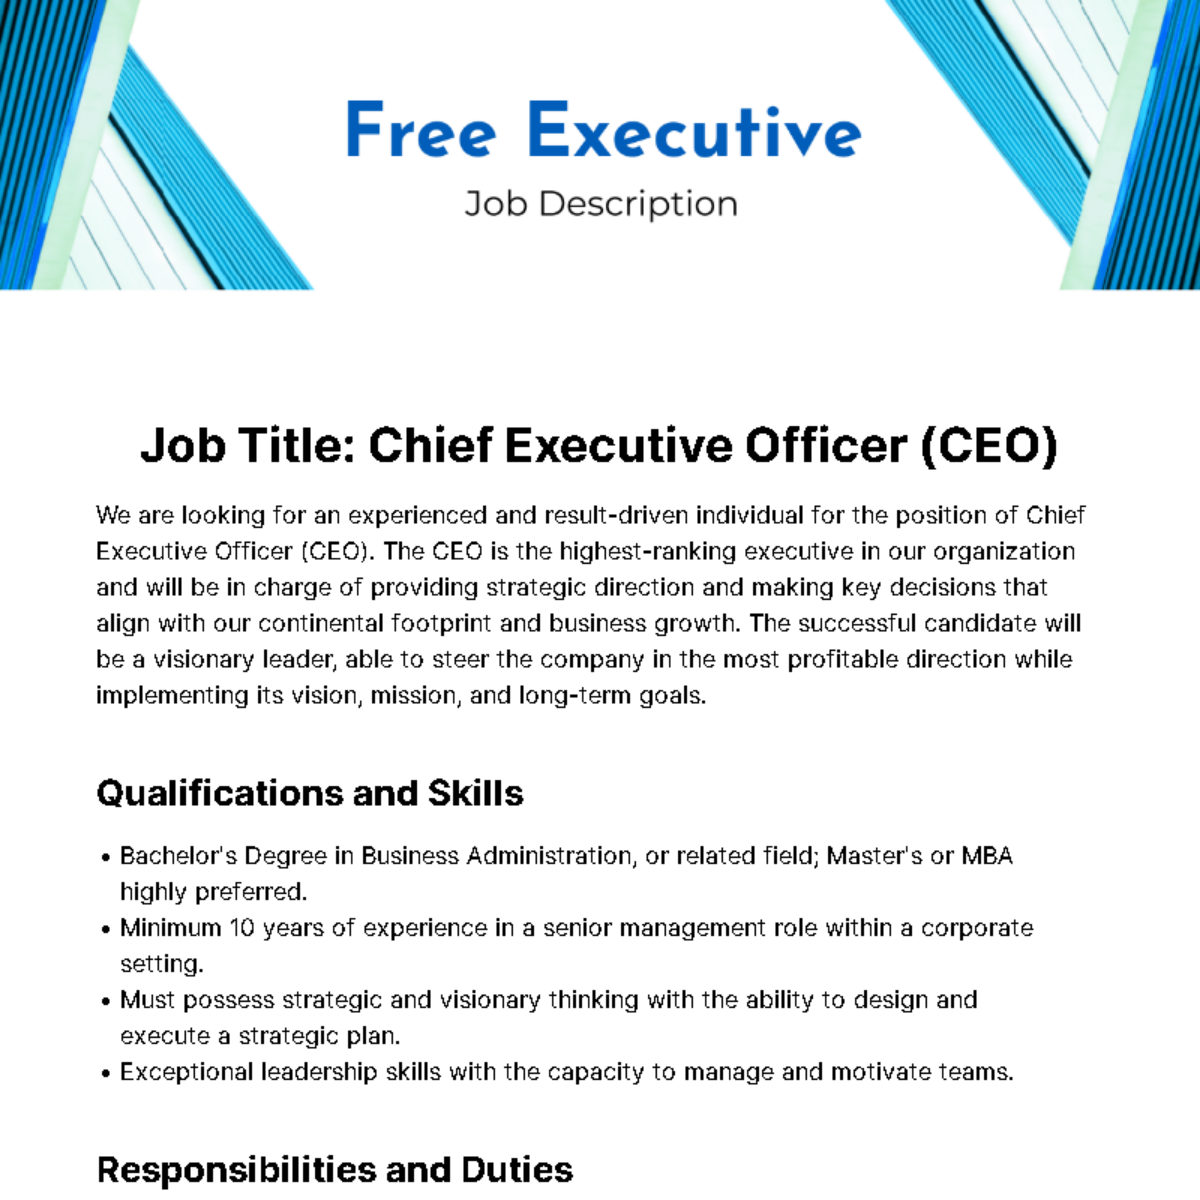 Free Executive Job Description Template